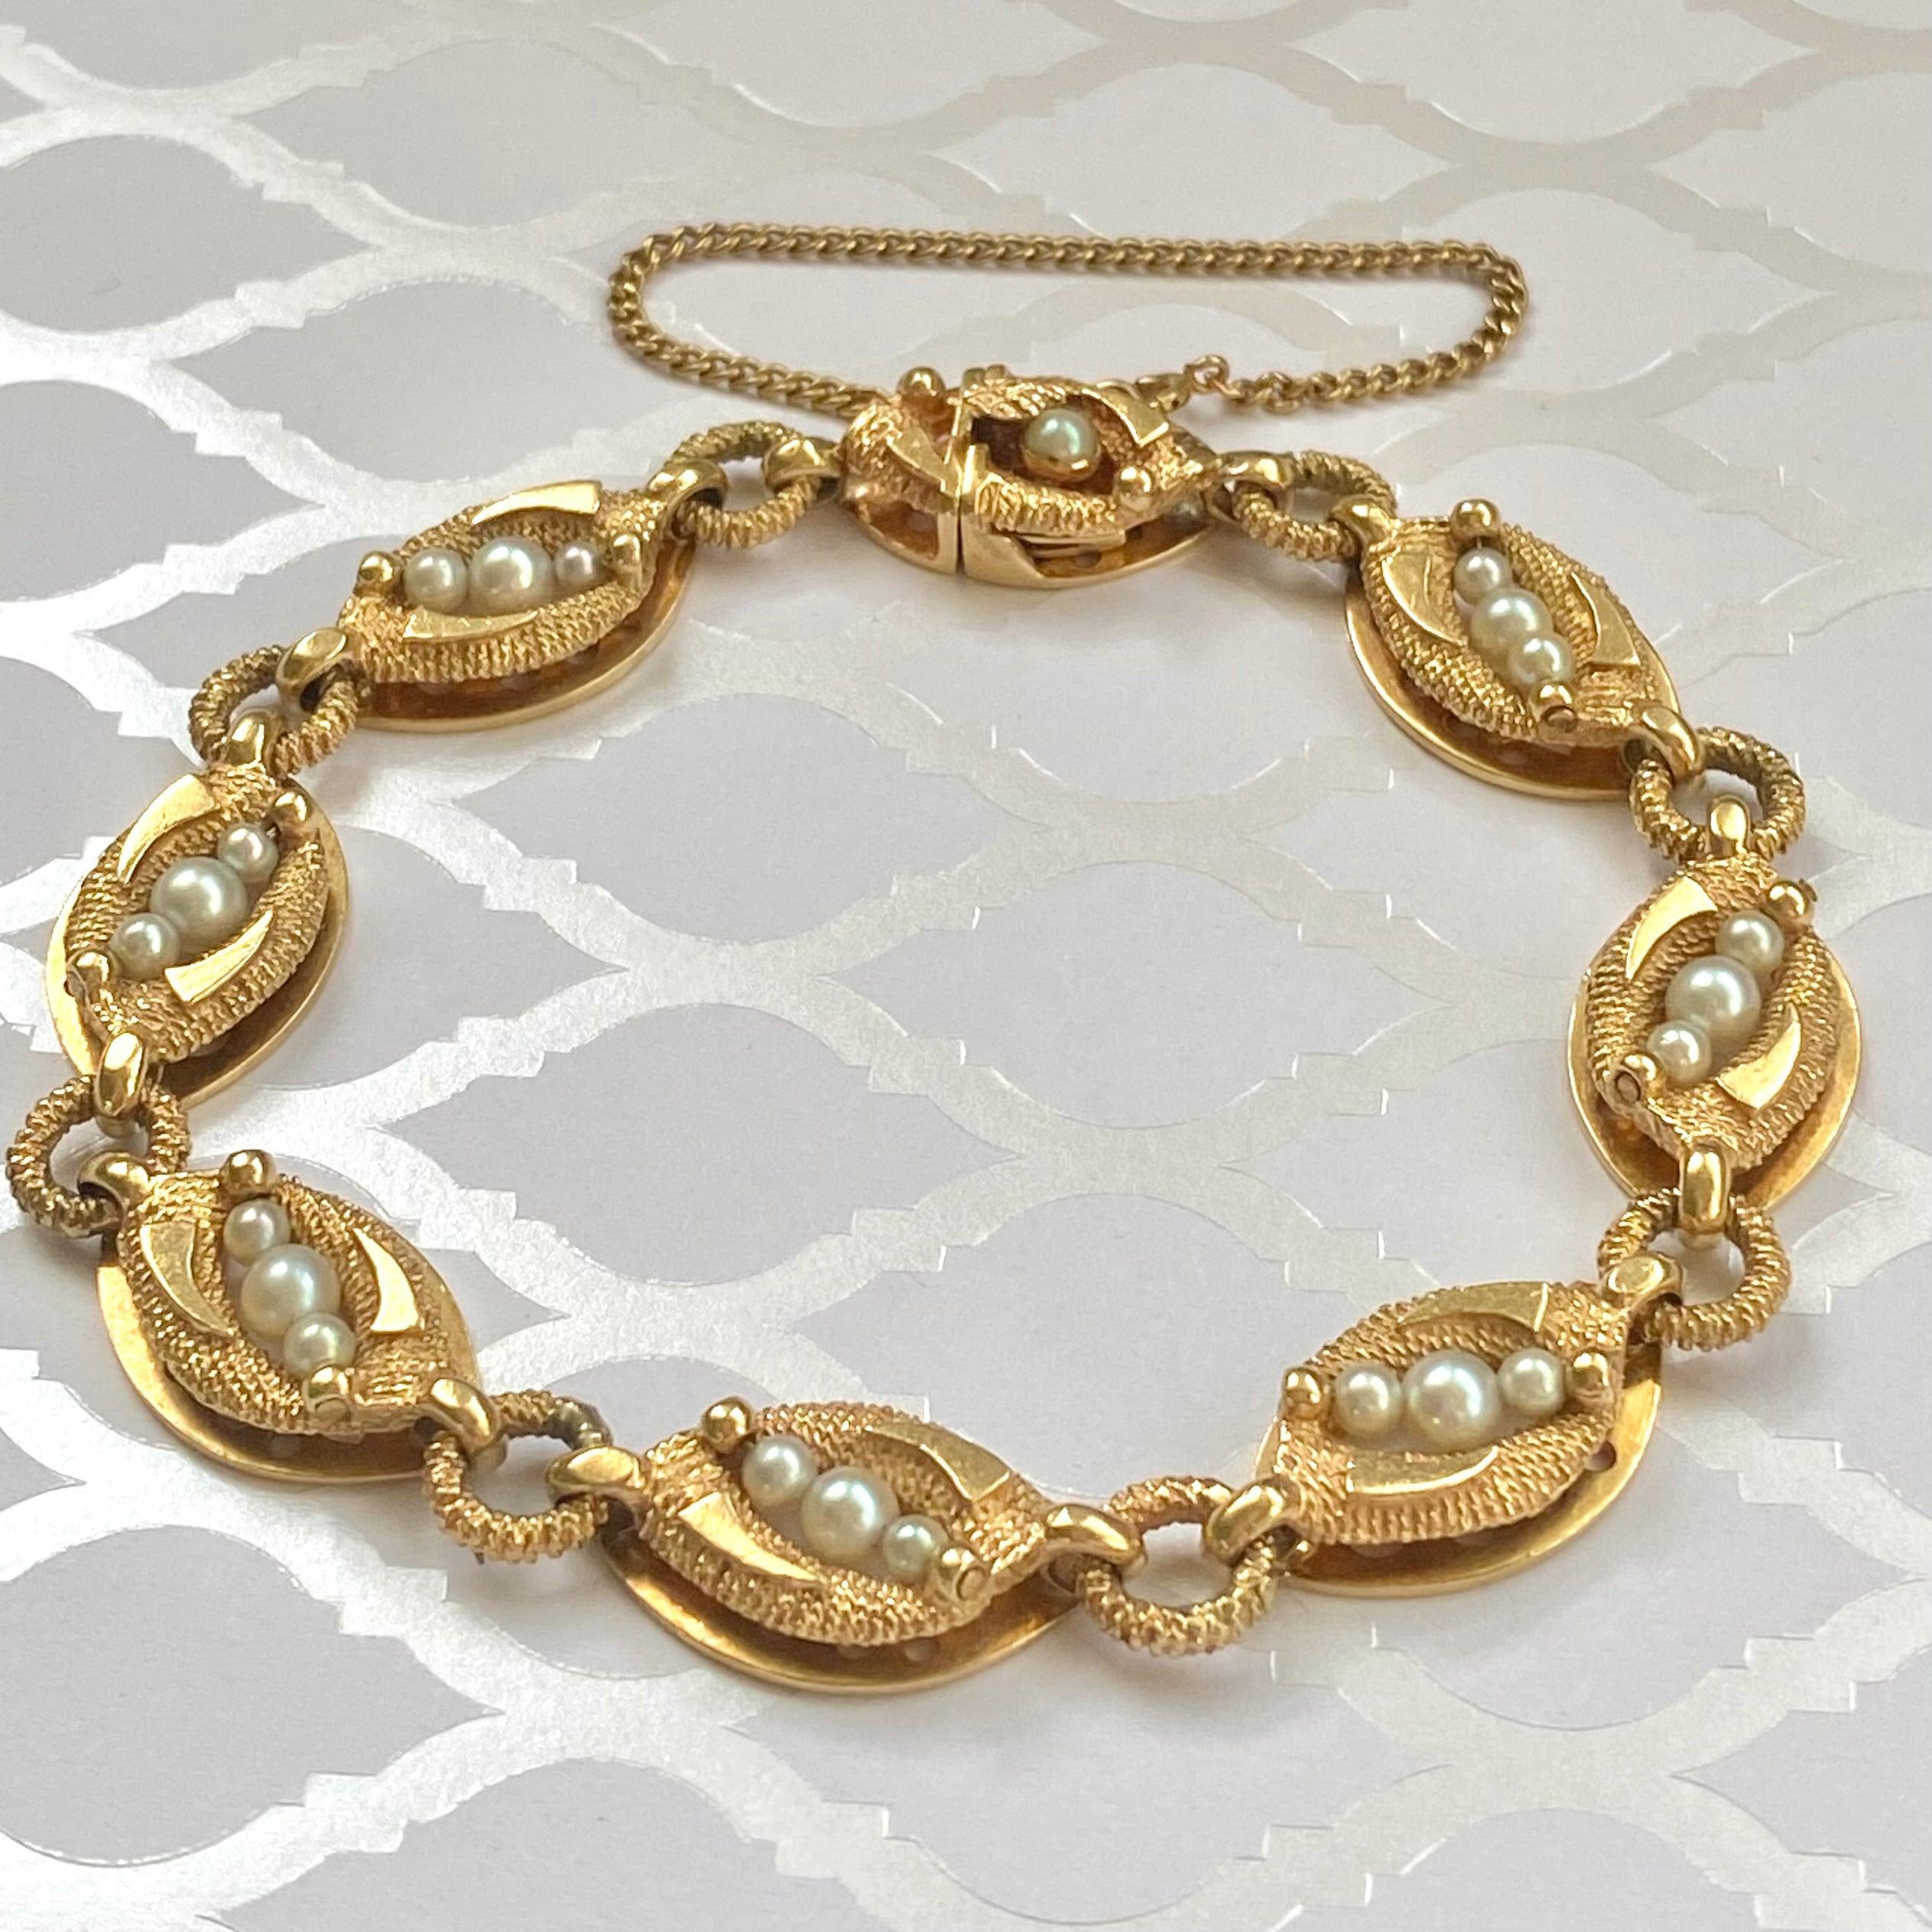 Bracelet La Triomphe 14K, composé d'une série de maillons allongés en or reliés par des anneaux en or. Chaque maillon est serti de trois perles blanches. Le contraste entre la finition brillante et texturée donne un aspect sophistiqué à cette beauté